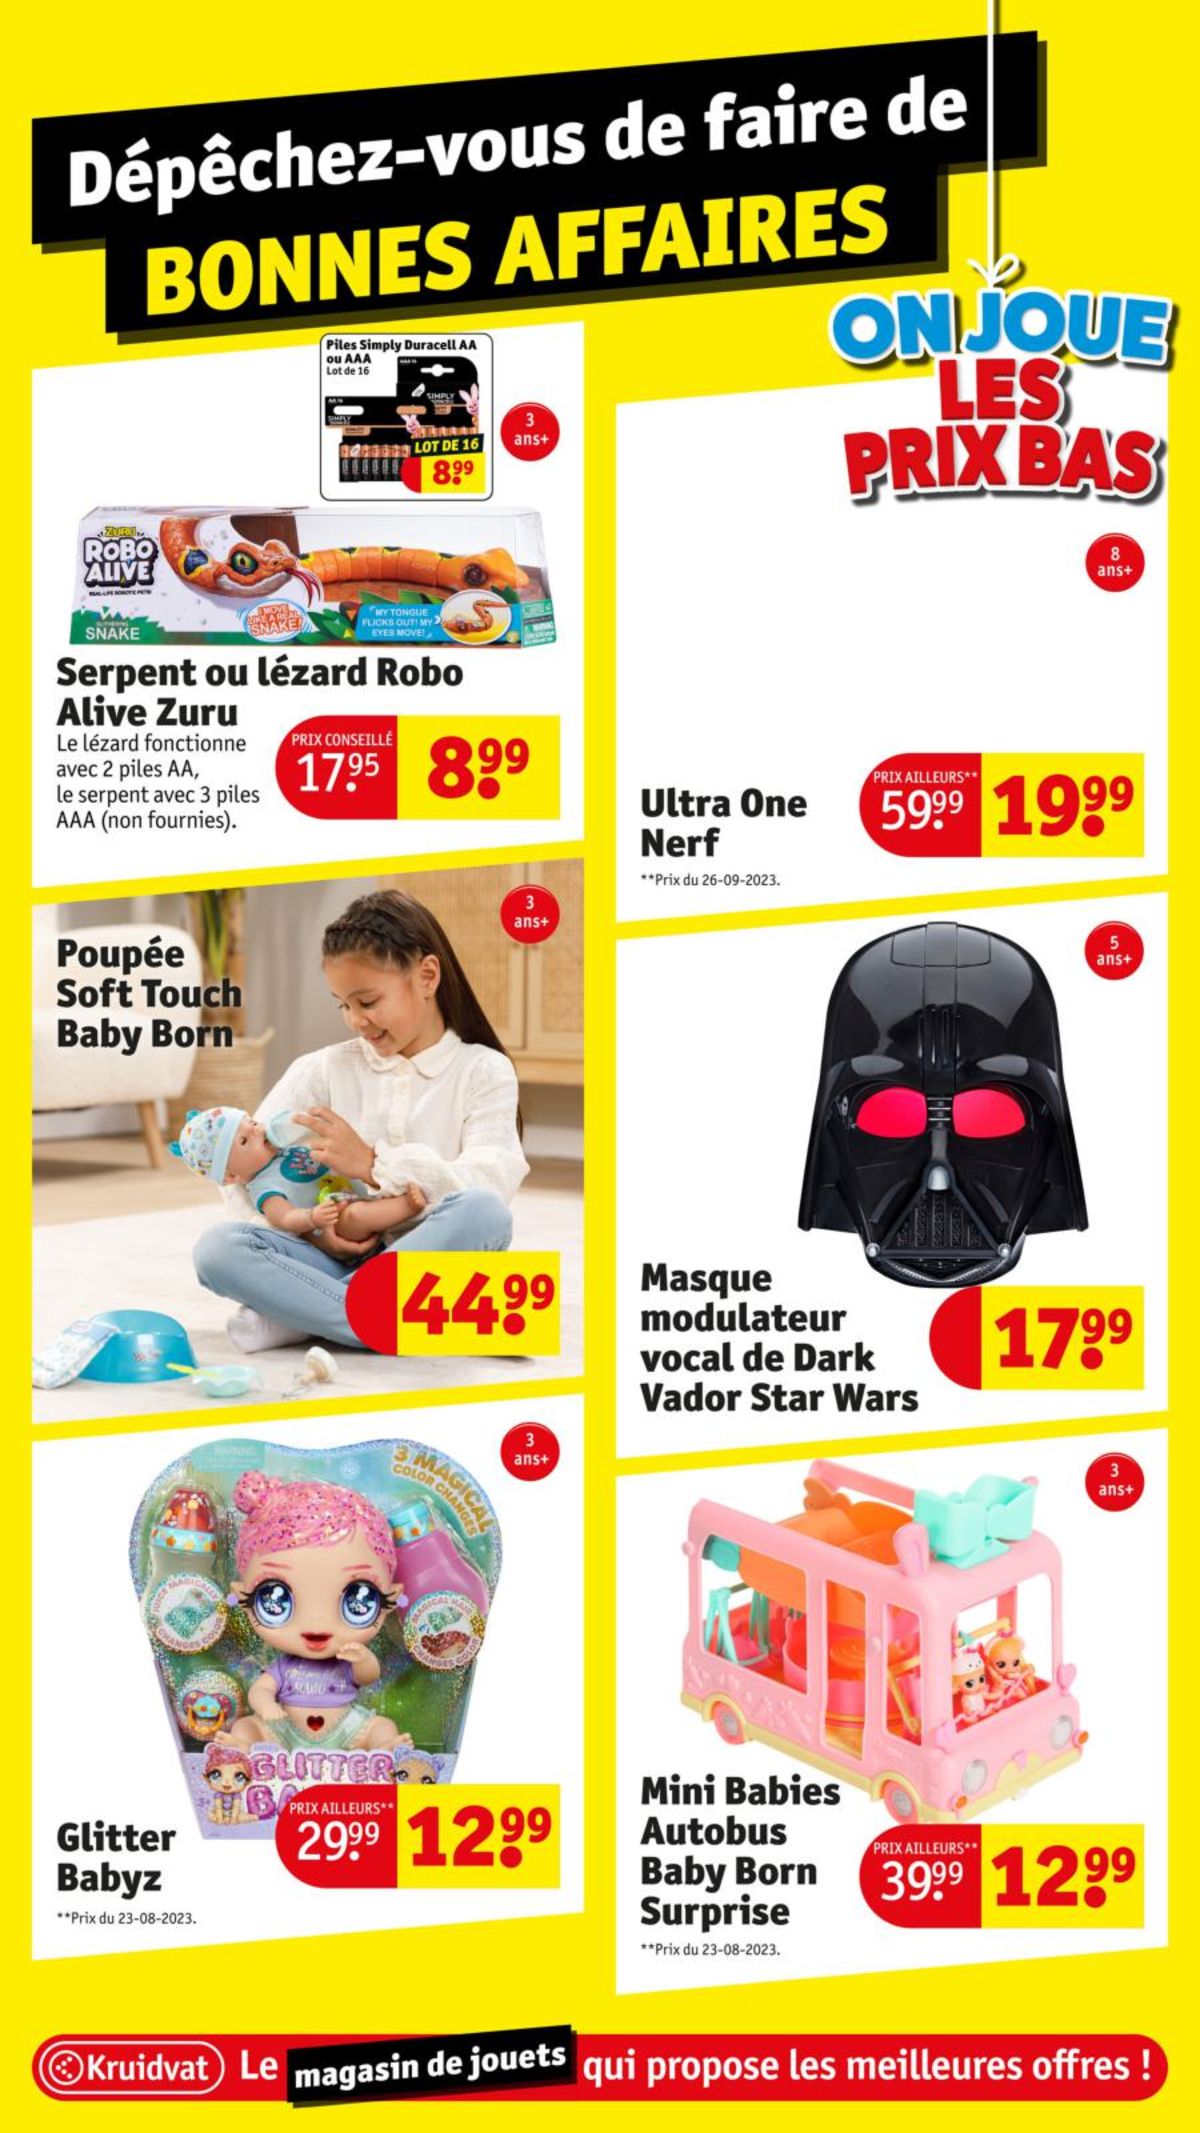 Catalogue Le magasin de jouets aux meilleures offres !, page 00012